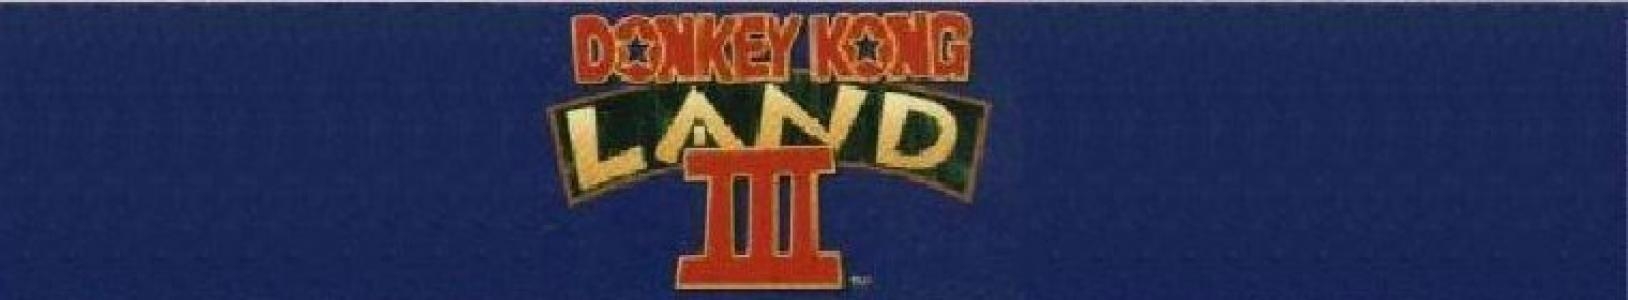 Donkey Kong Land III banner